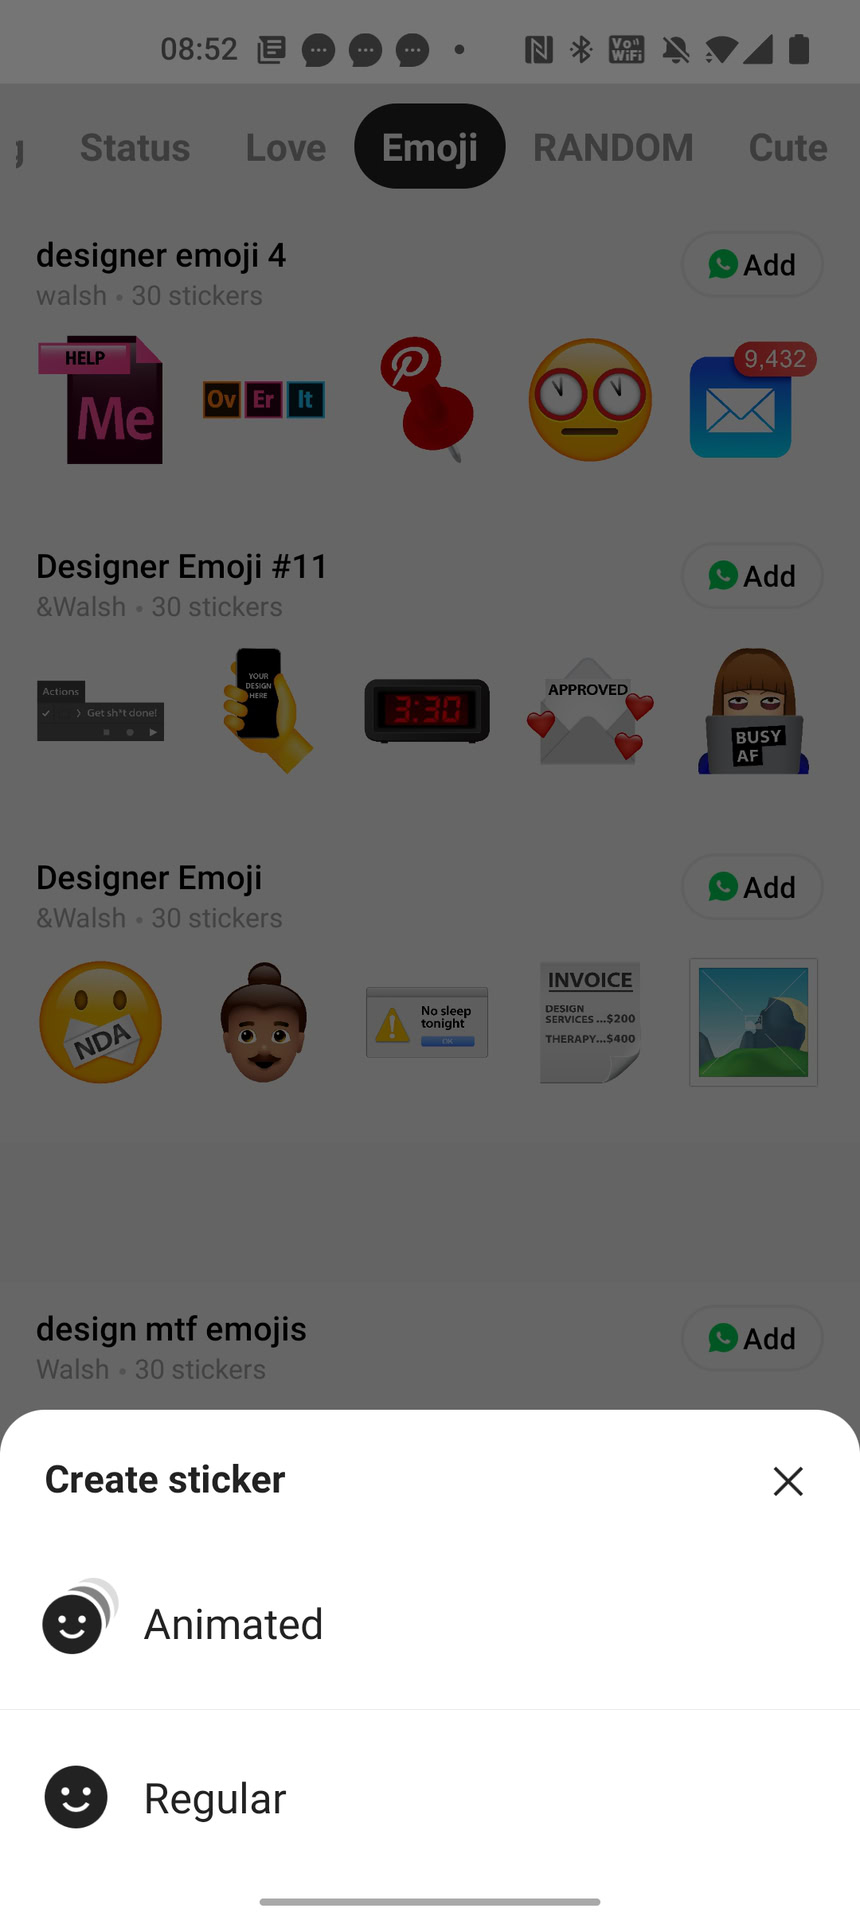 Ways to Create Custom WhatsApp Animated Stickers?